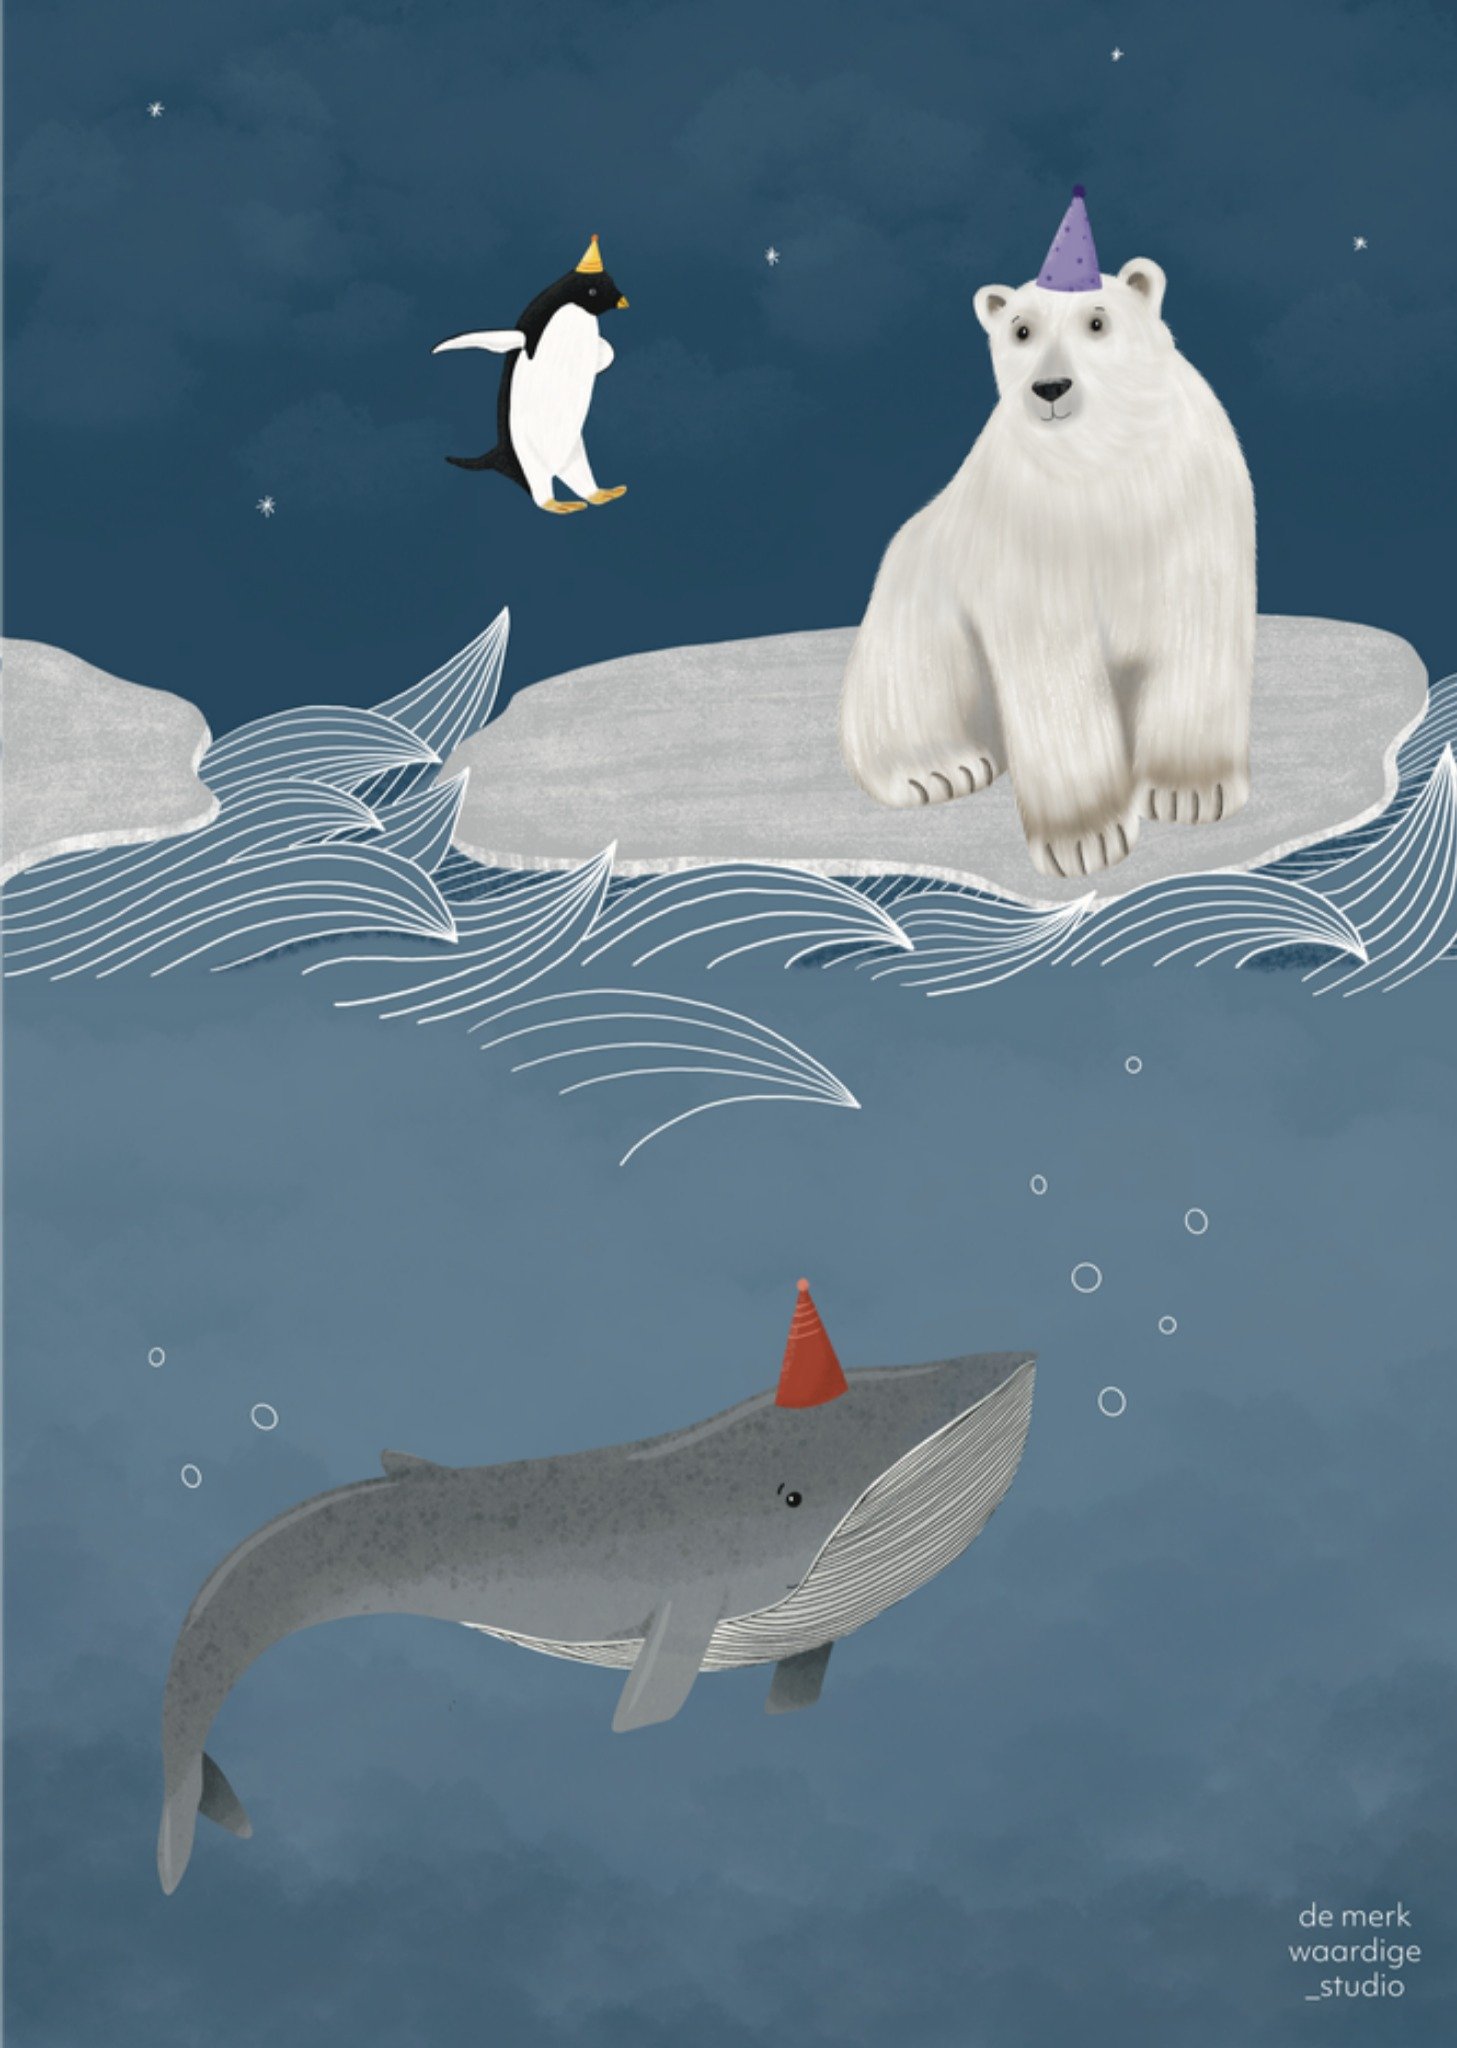 De Merkwaardige Studio - Verjaardagskaart - Feestje - Arctische dieren